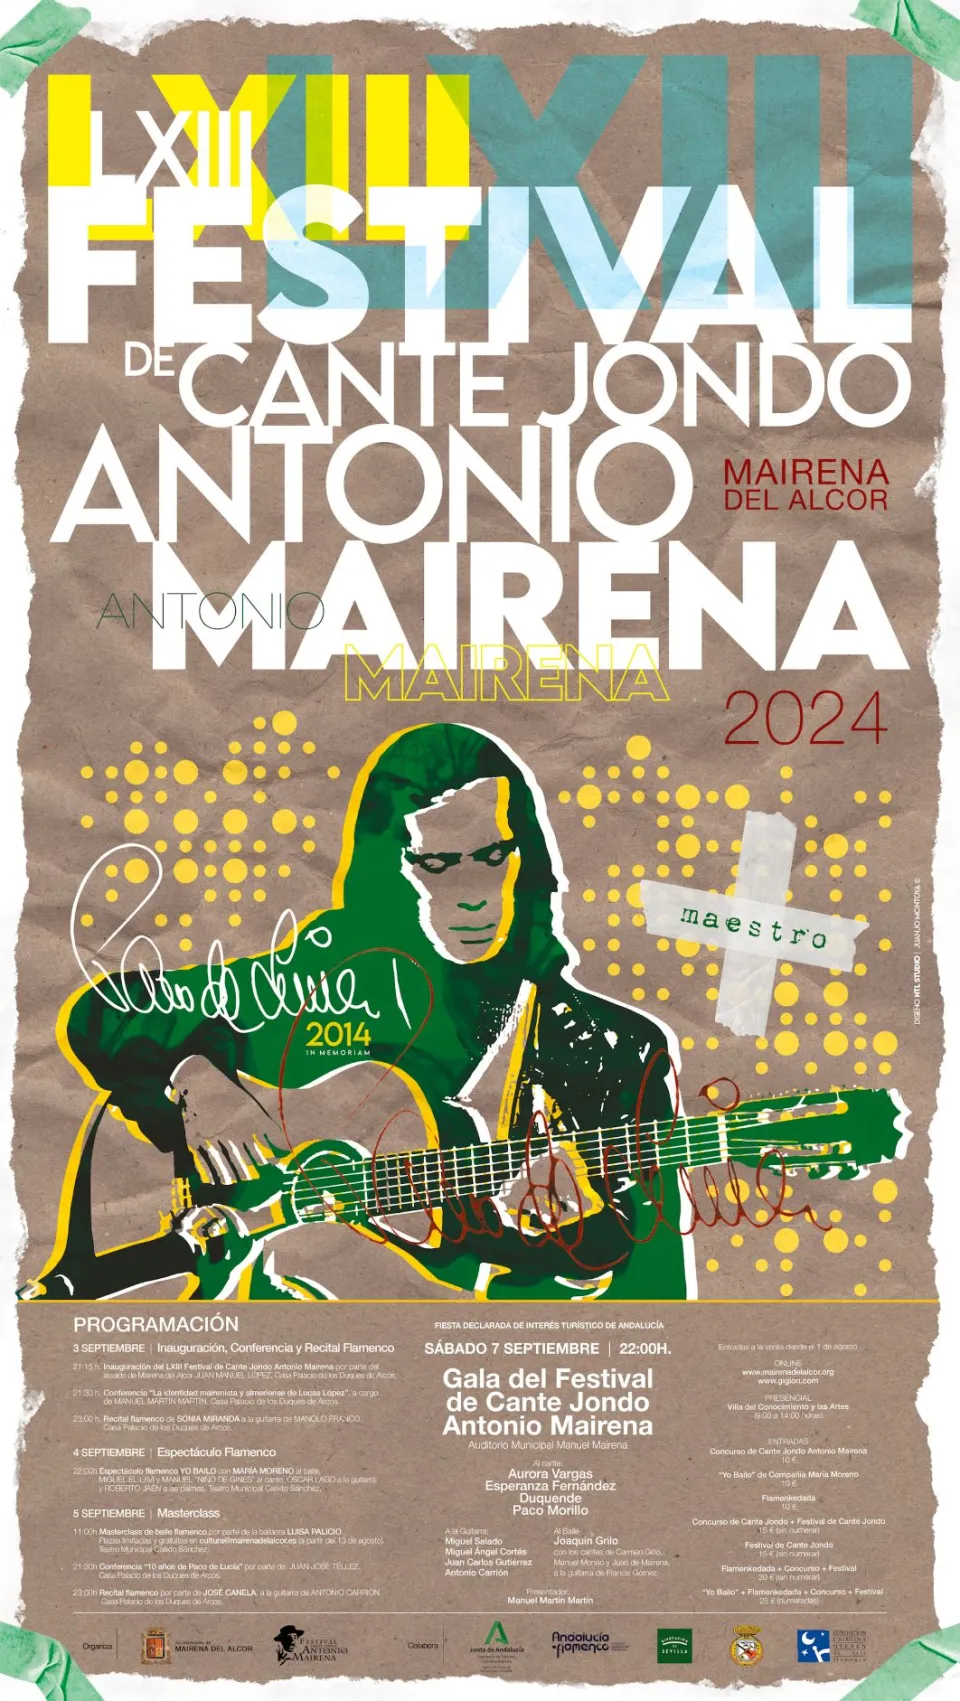 Festival de cante jondo Antonio Mairena 2024